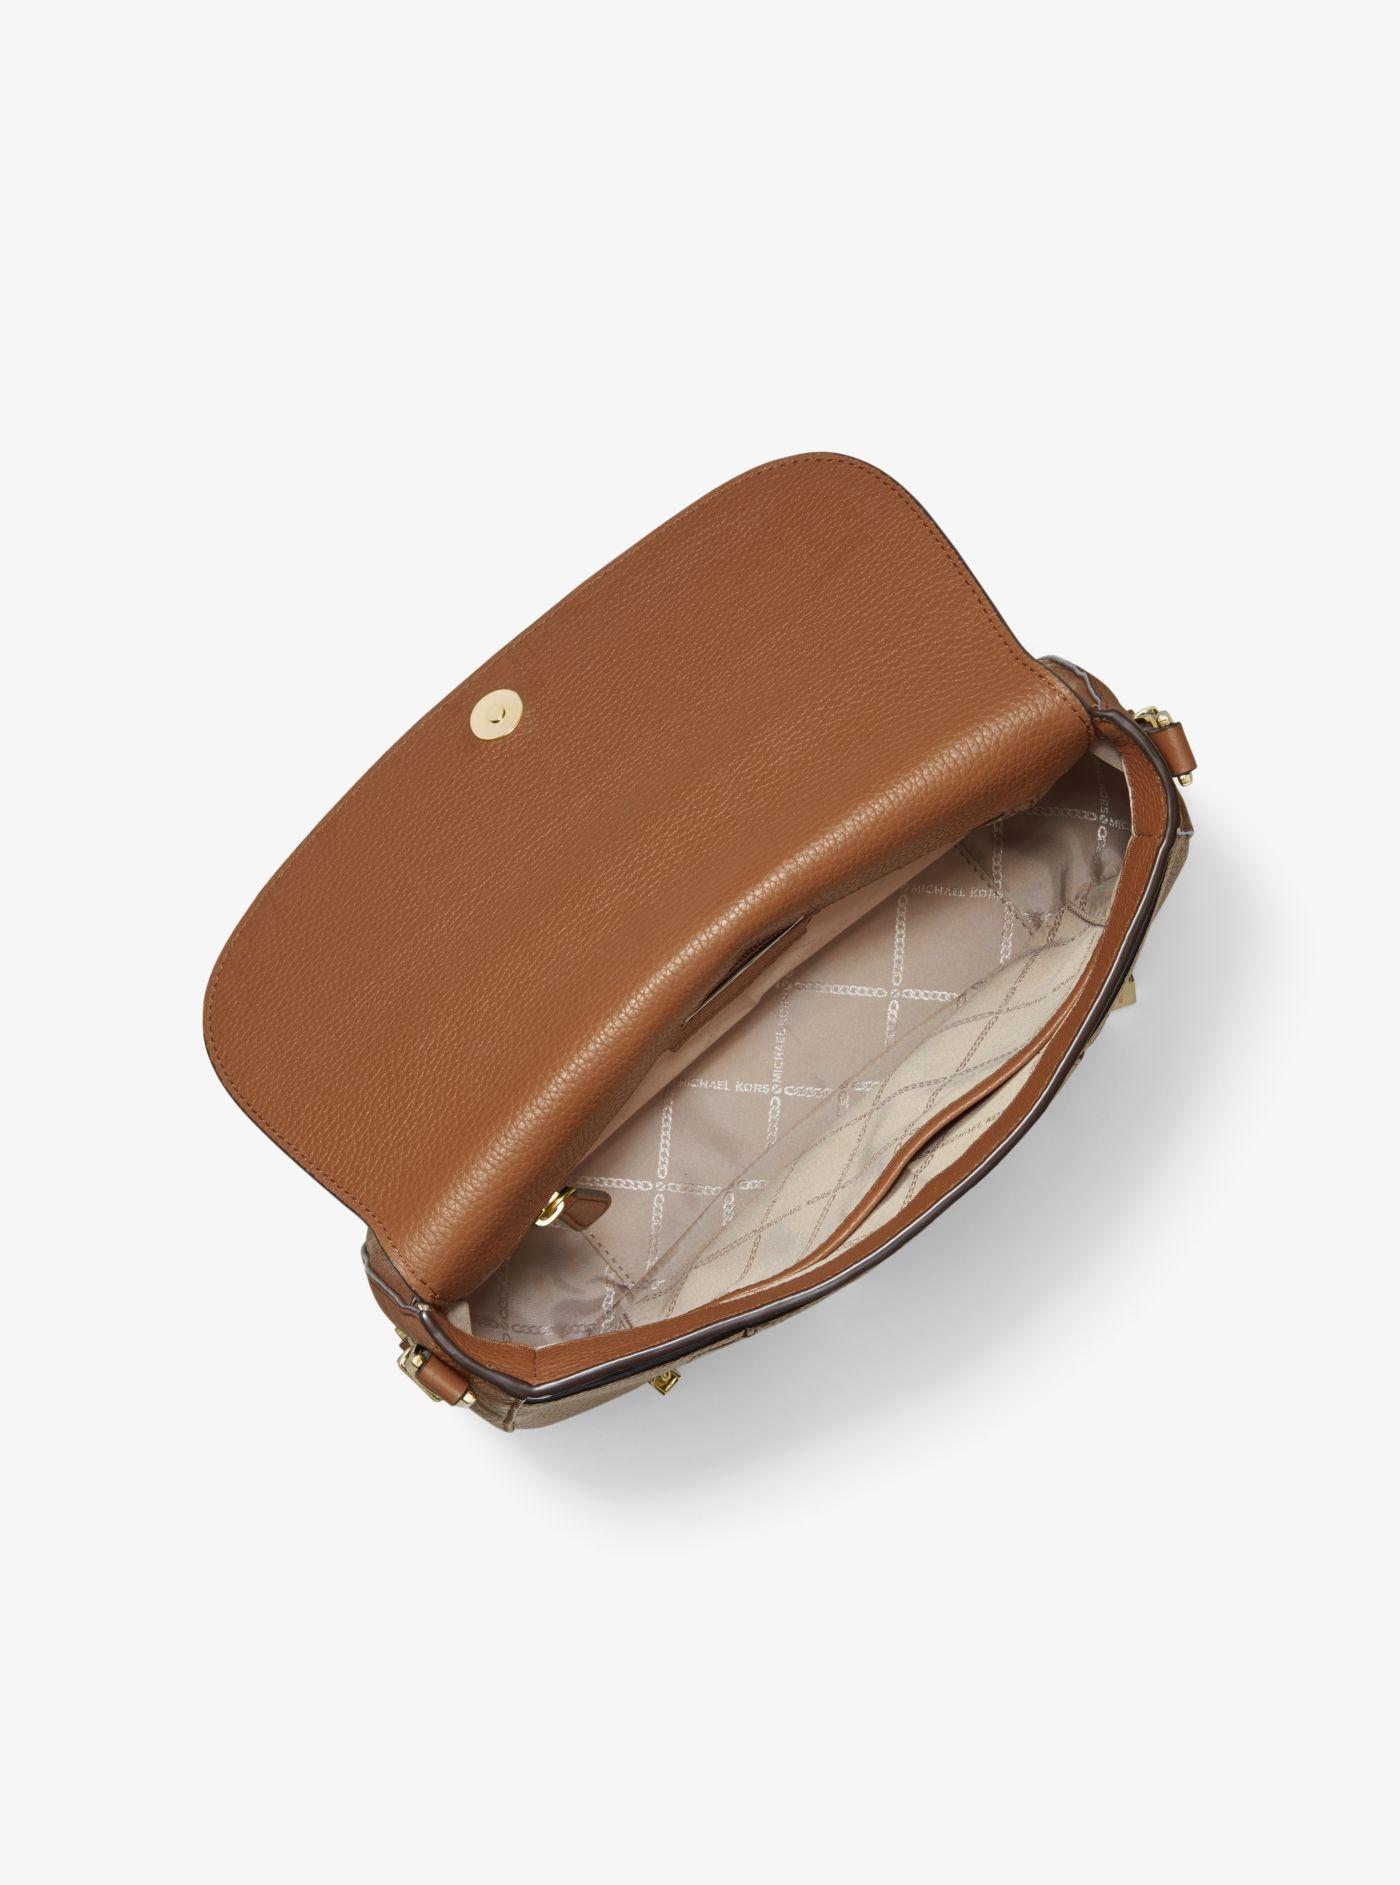 Michael Kors Bedford Legacy Medium Pebbled Leather Shoulder Bag in 